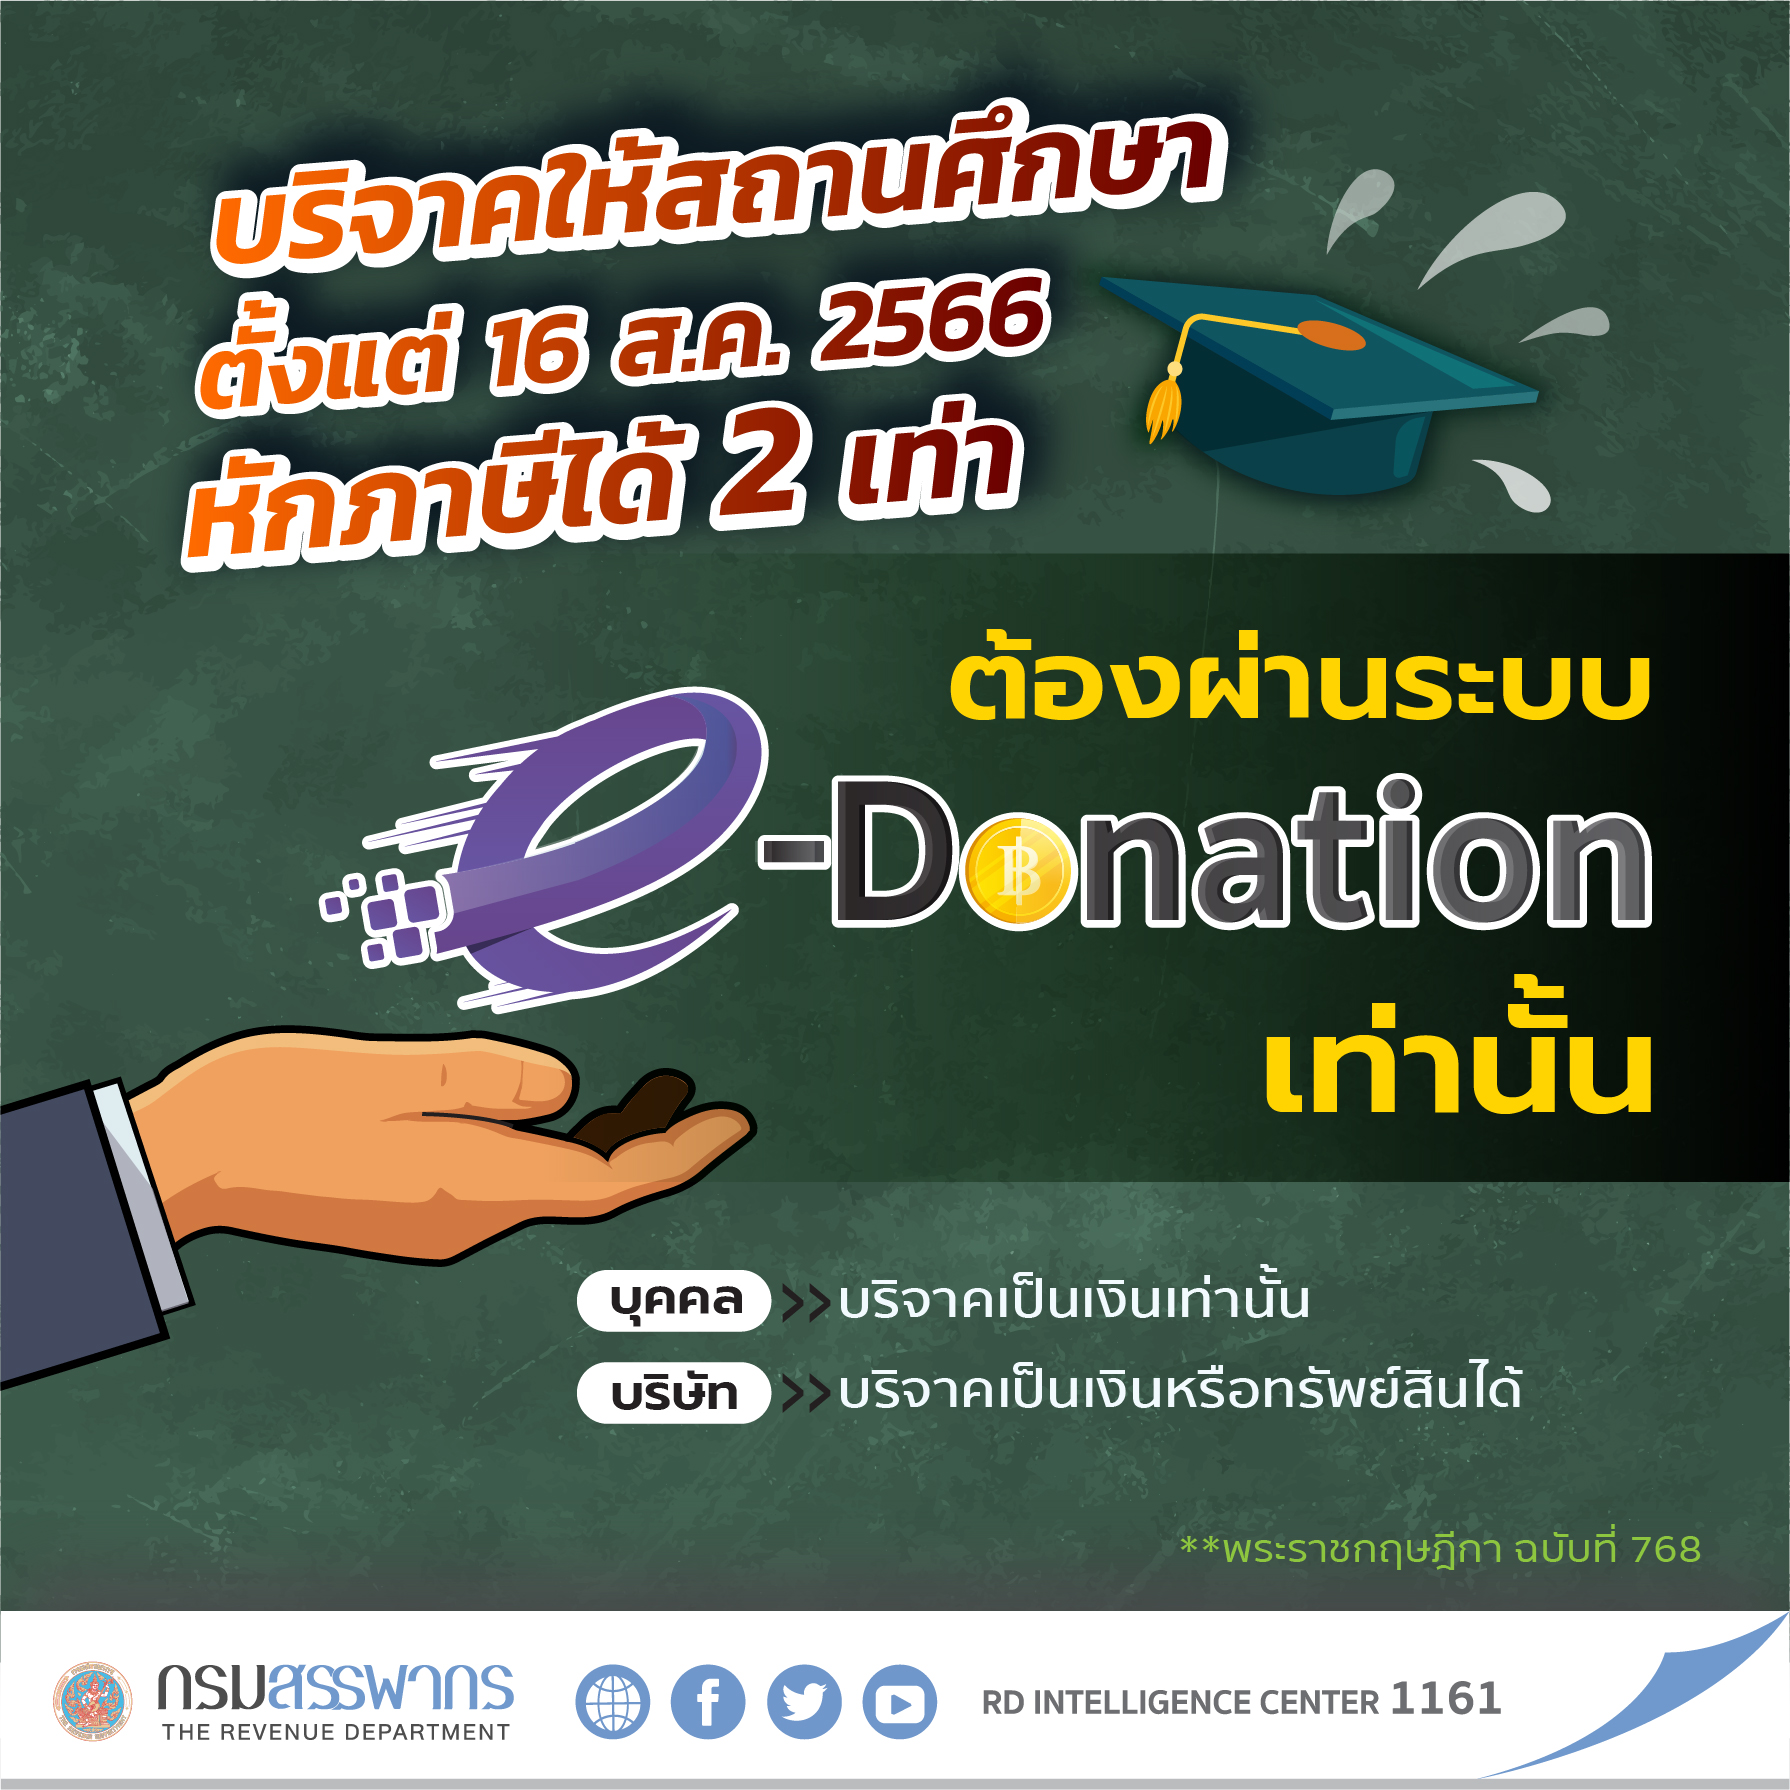 รู้หรือไม่ !? การบริจาคให้สถานศึกษาสามารถหักภาษีได้ 2 เท่า แต่ต้องบริจาคผ่านระบบ e-Donation เท่านั้น !! เริ่มตั้งแต่ 16 สิงหาคม 2566 เป็นต้นไป